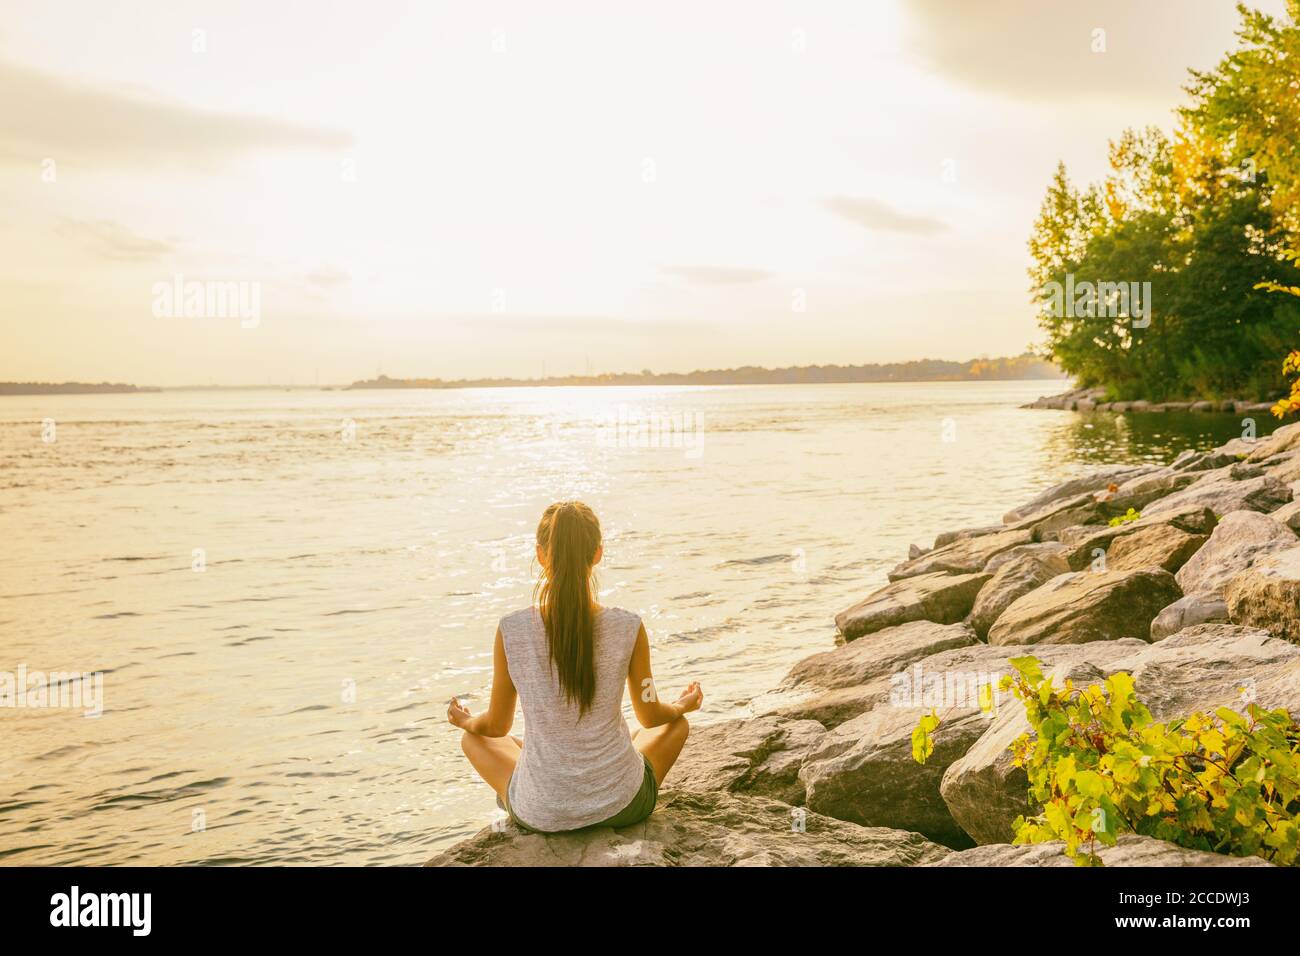 Clase de yoga fuera en el parque natural junto a la orilla del lago. Mujer sentada en el loto pose meditando por el agua en la mañana el sol brillos amanecer. Meditación Foto de stock